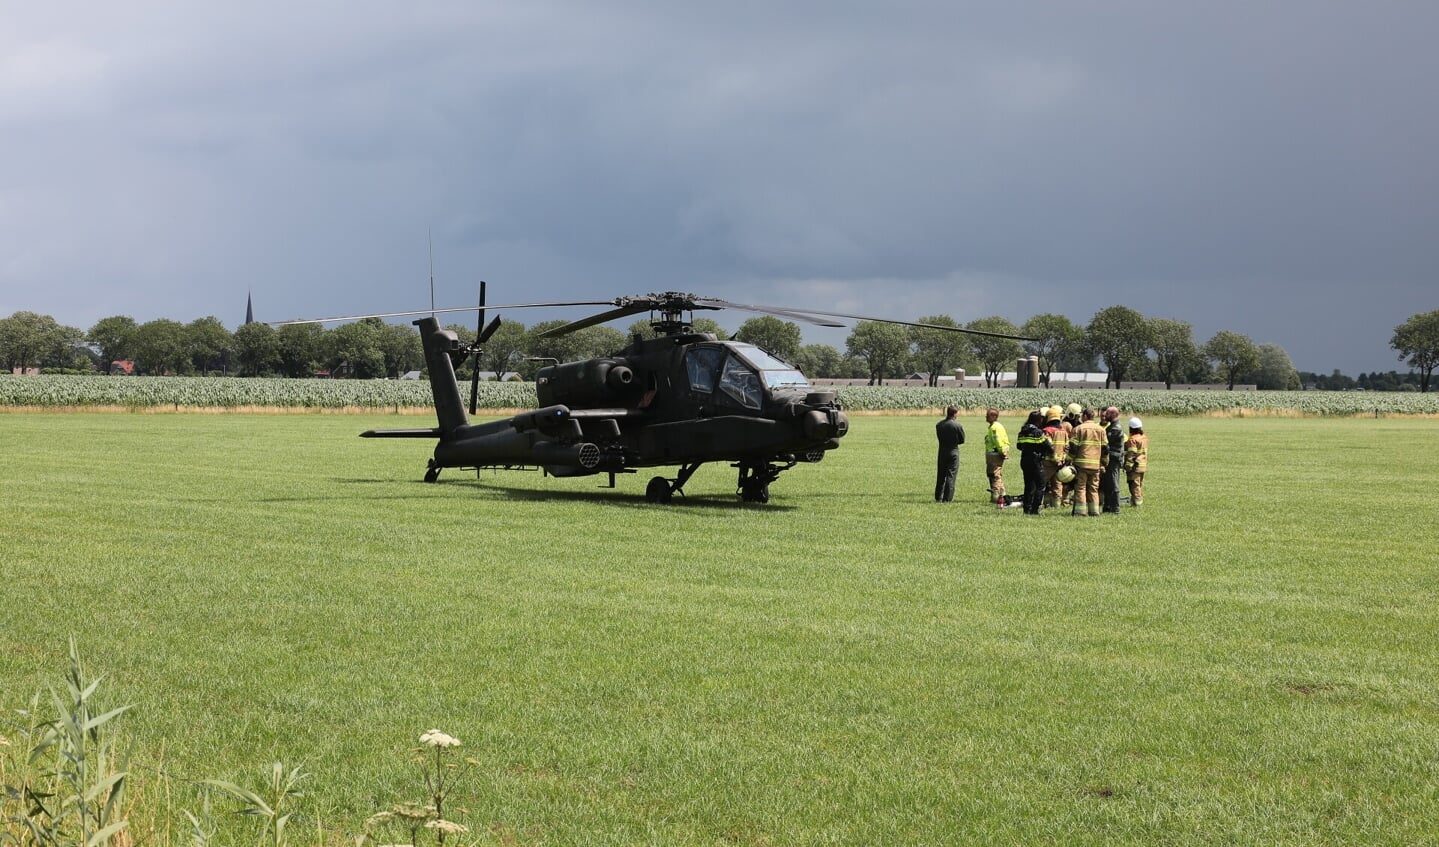 Apache-helikopter van defensie maakt voorzorgslanding in weiland Lith. (Foto: Charles Mallo, Foto Mallo)